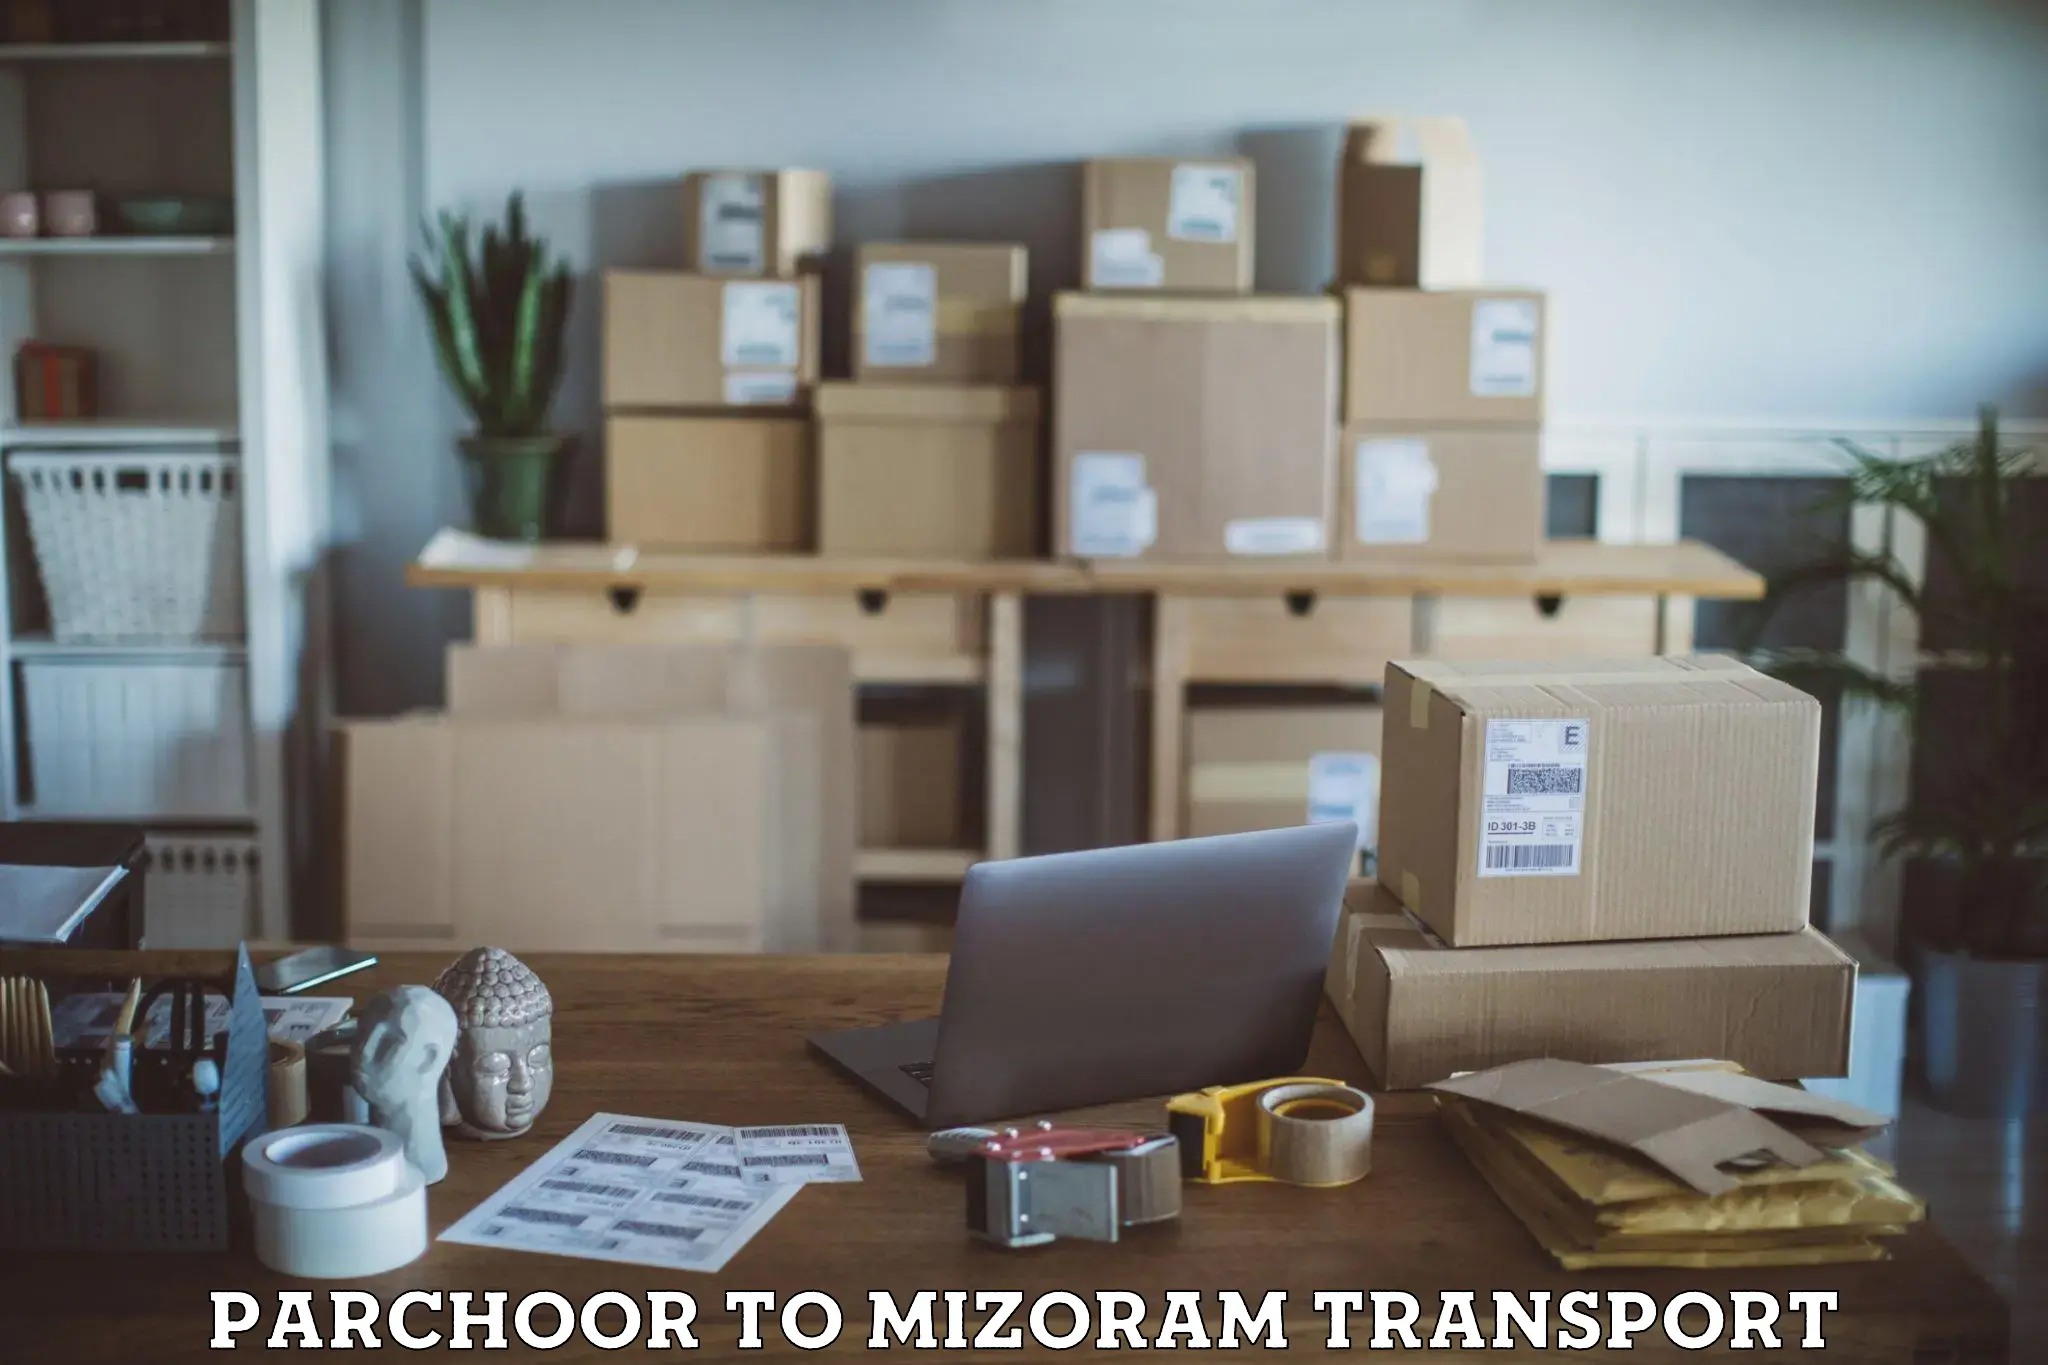 Delivery service Parchoor to Mizoram